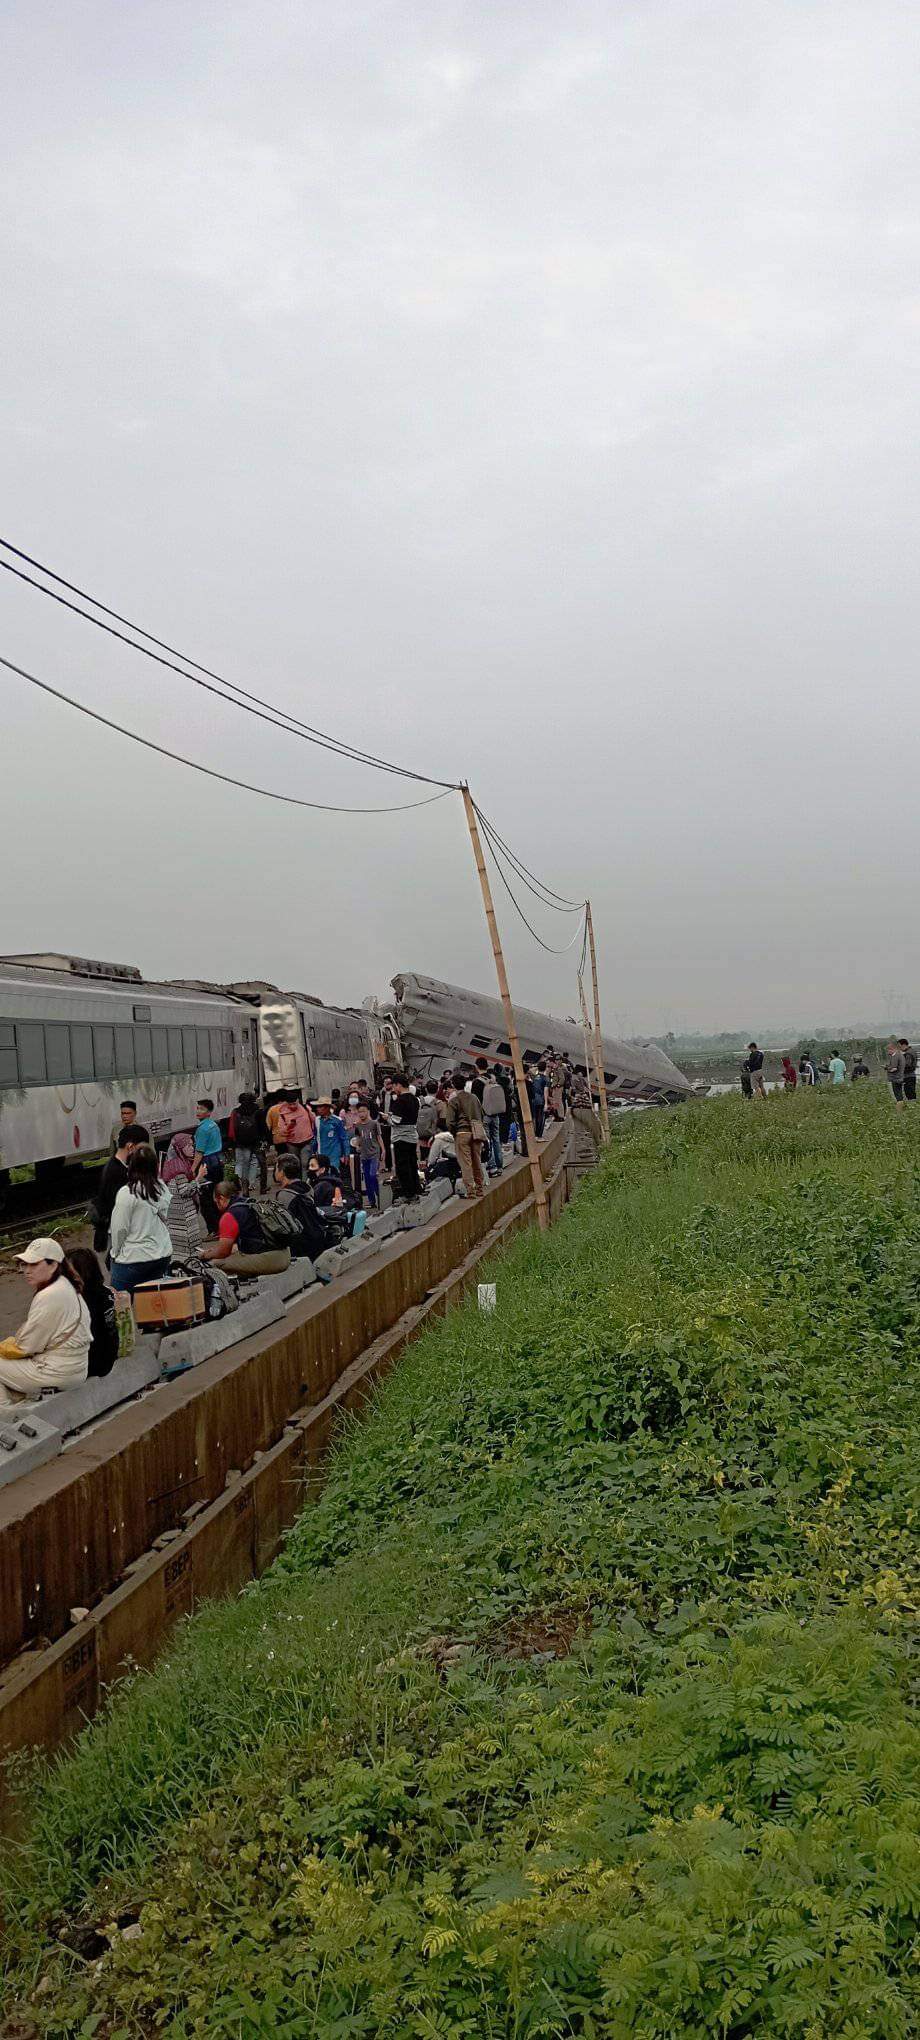 印尼火車相撞 現場畫面曝光